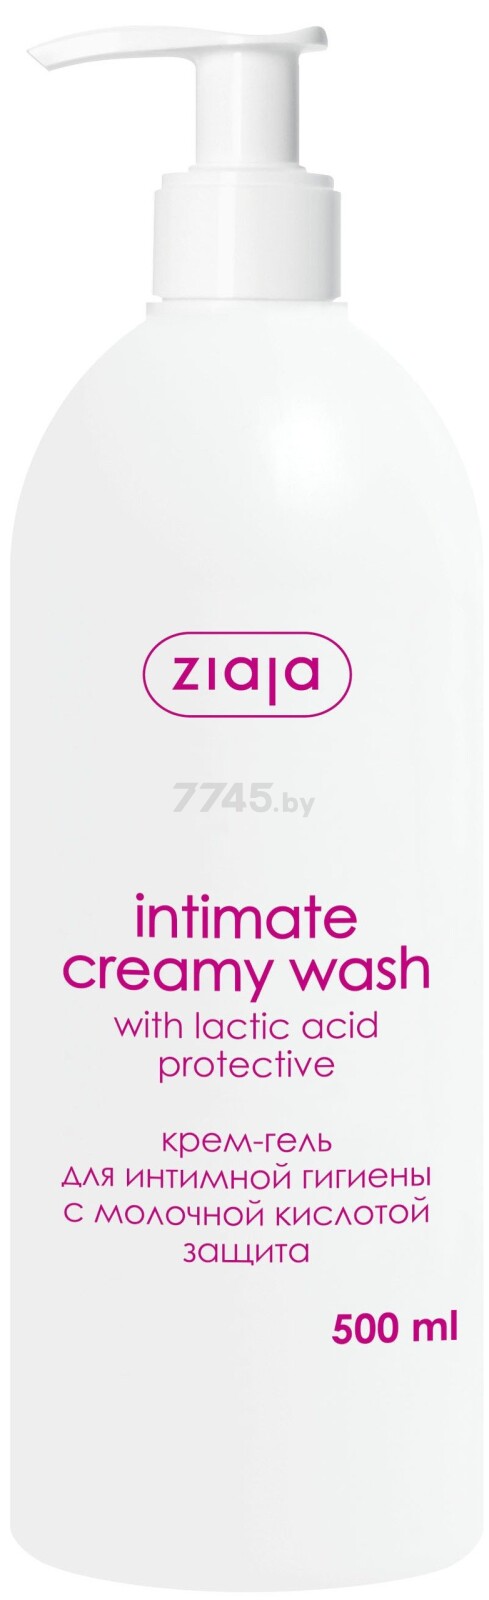 Крем-гель для интимной гигиены ZIAJA Intimate С молочной кислотой 500 мл (15524)